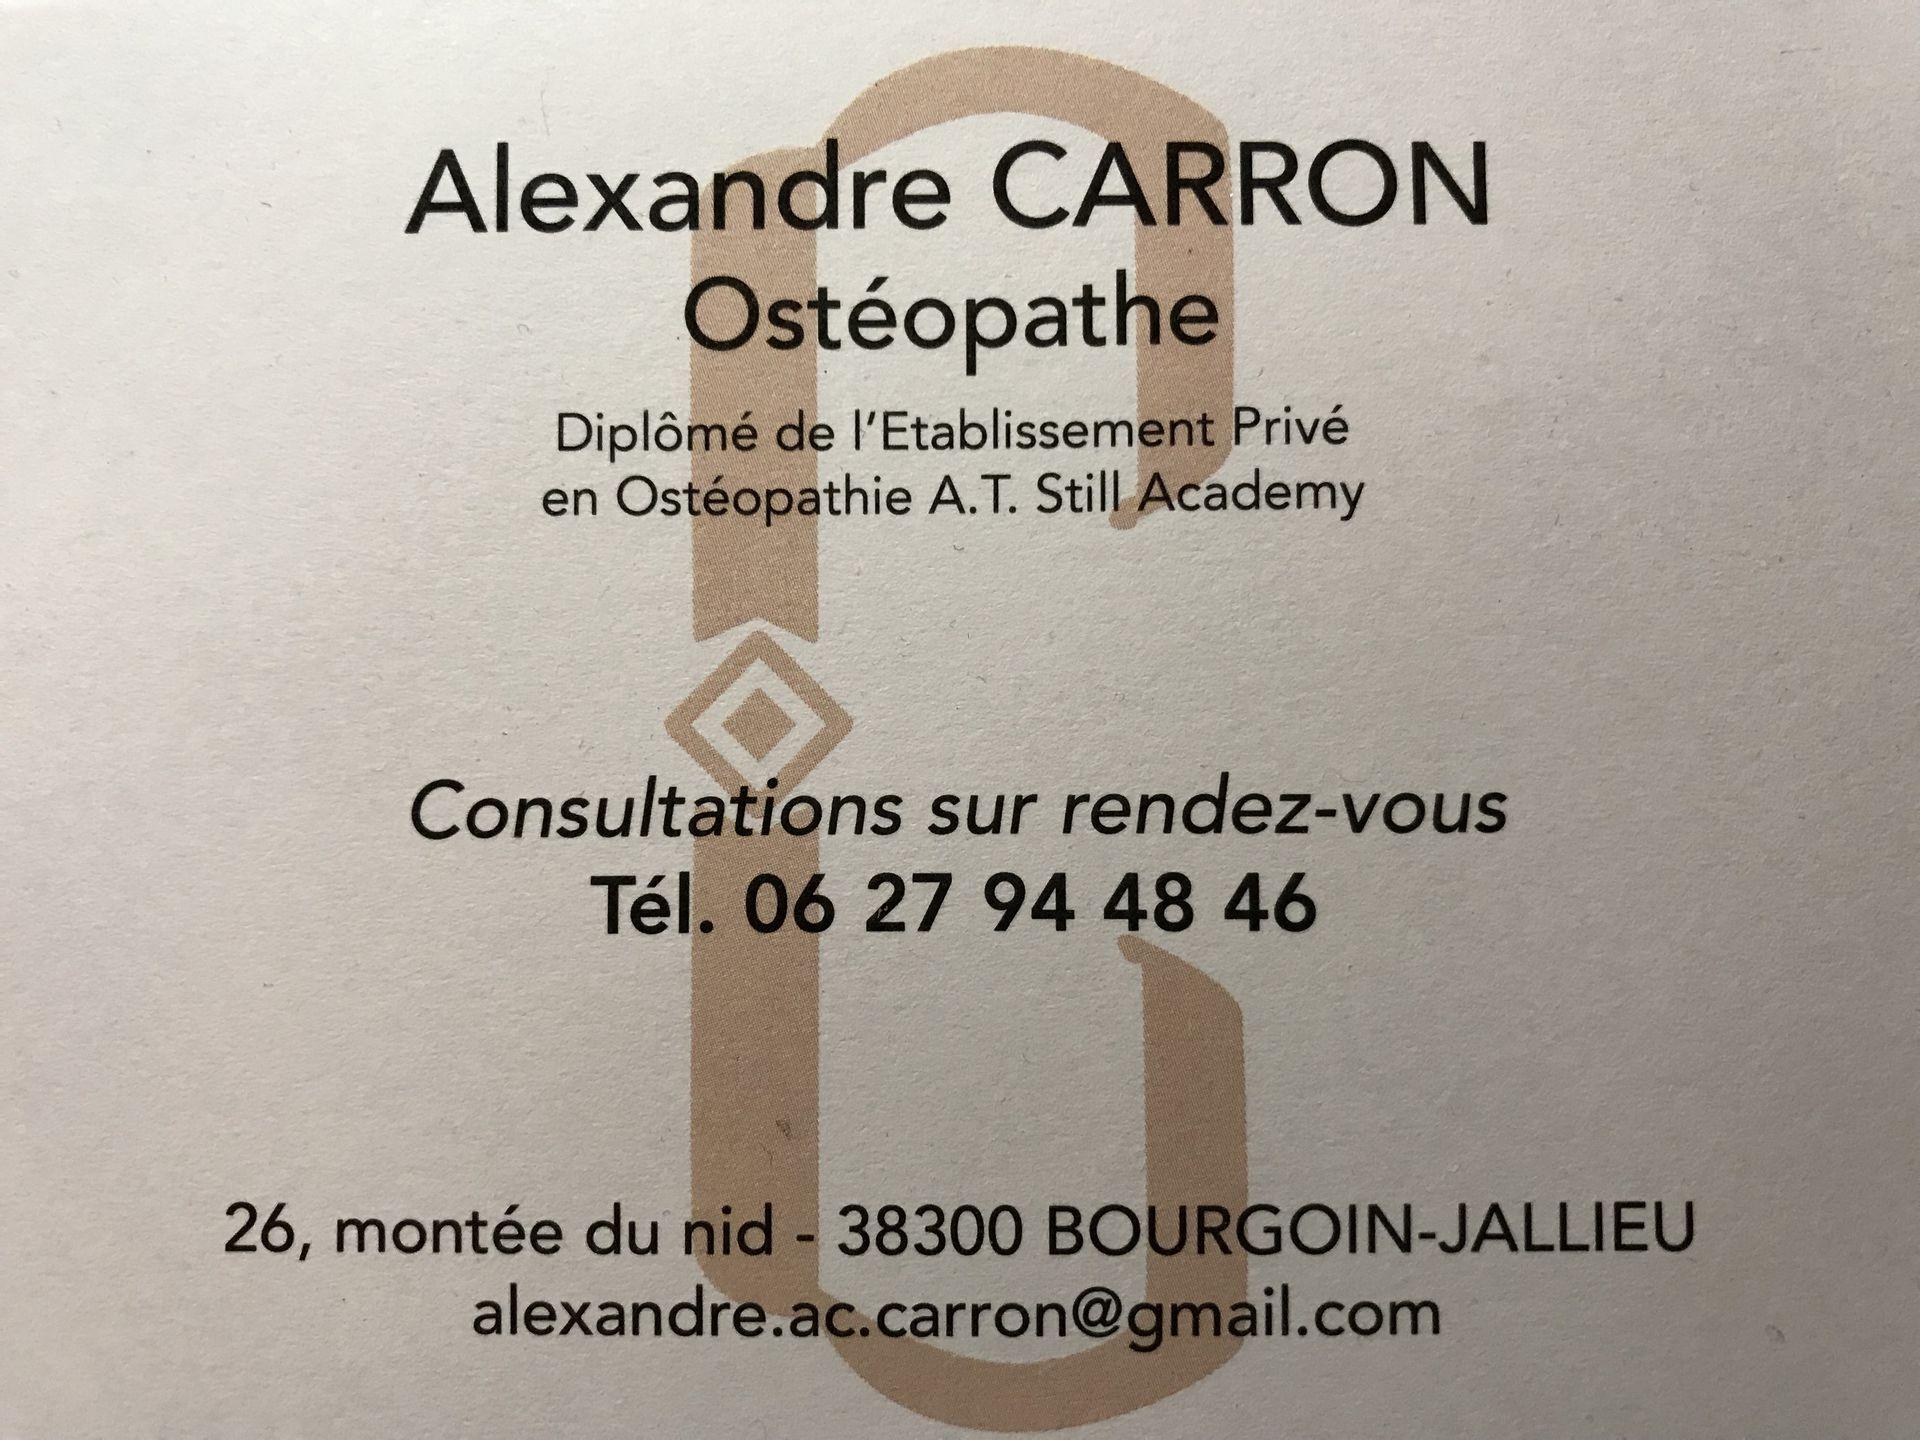 Carron Alexandre Bourgoin Jallieu